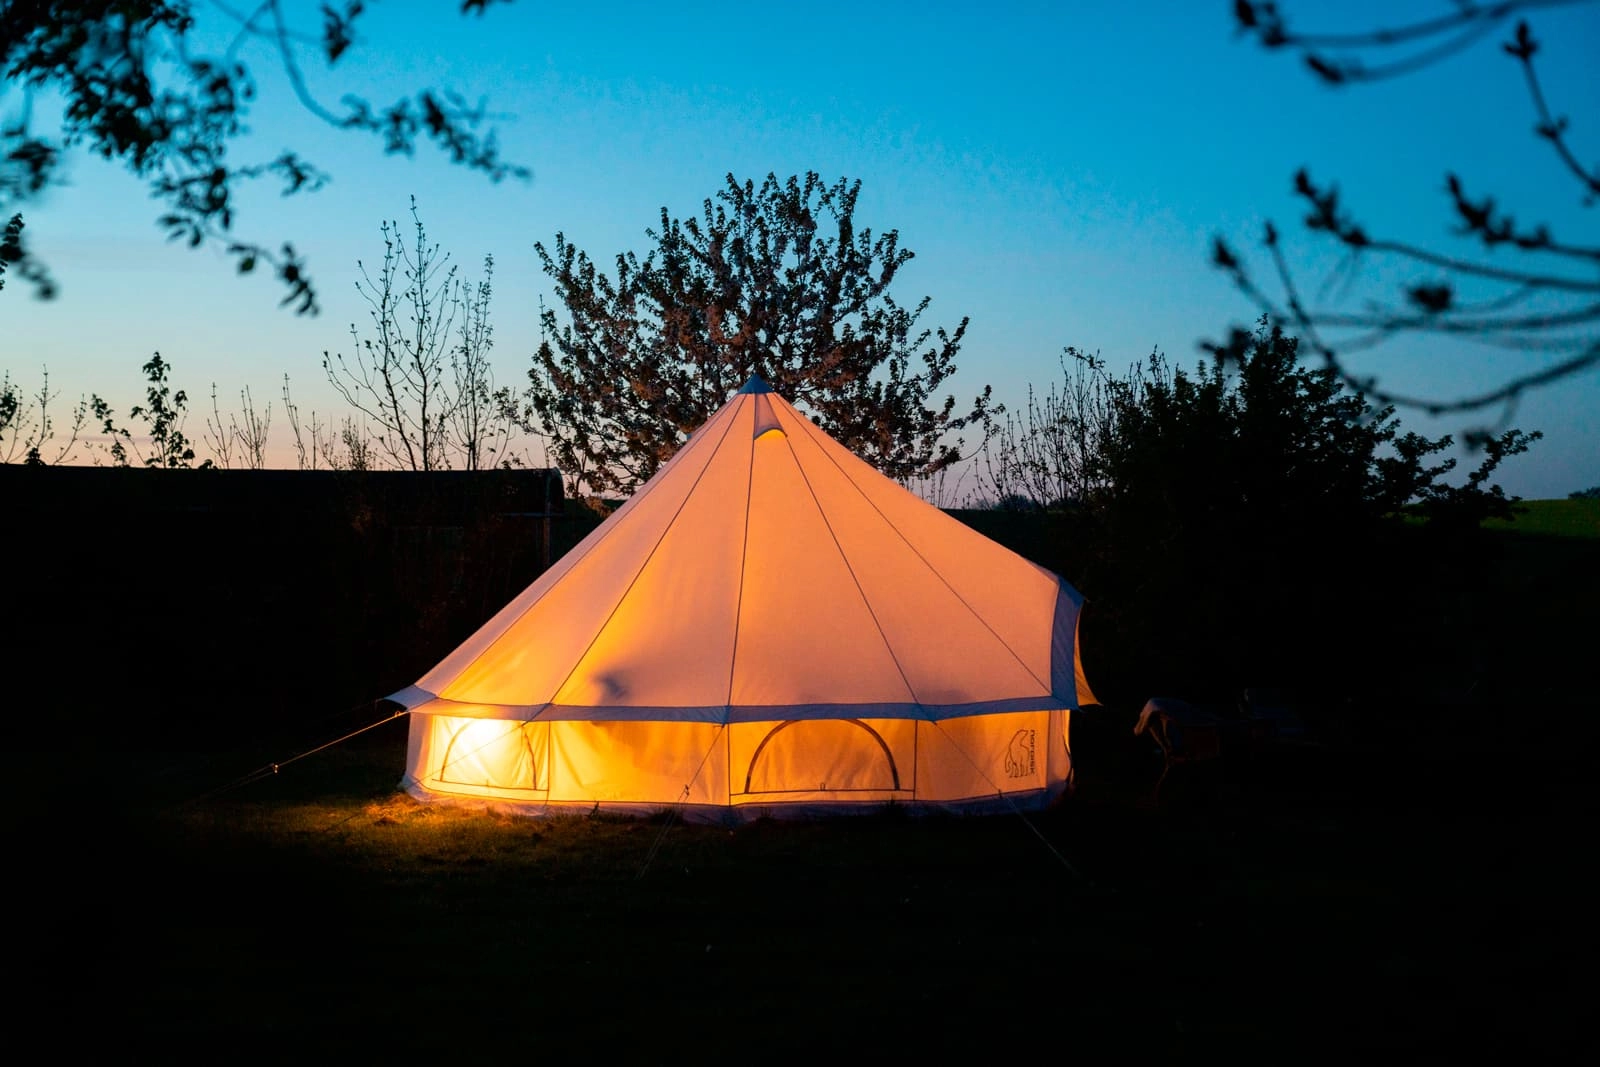 Oplev glamping i et telt i naturen ved at tilmelde dig Clevers nyhedsbrev